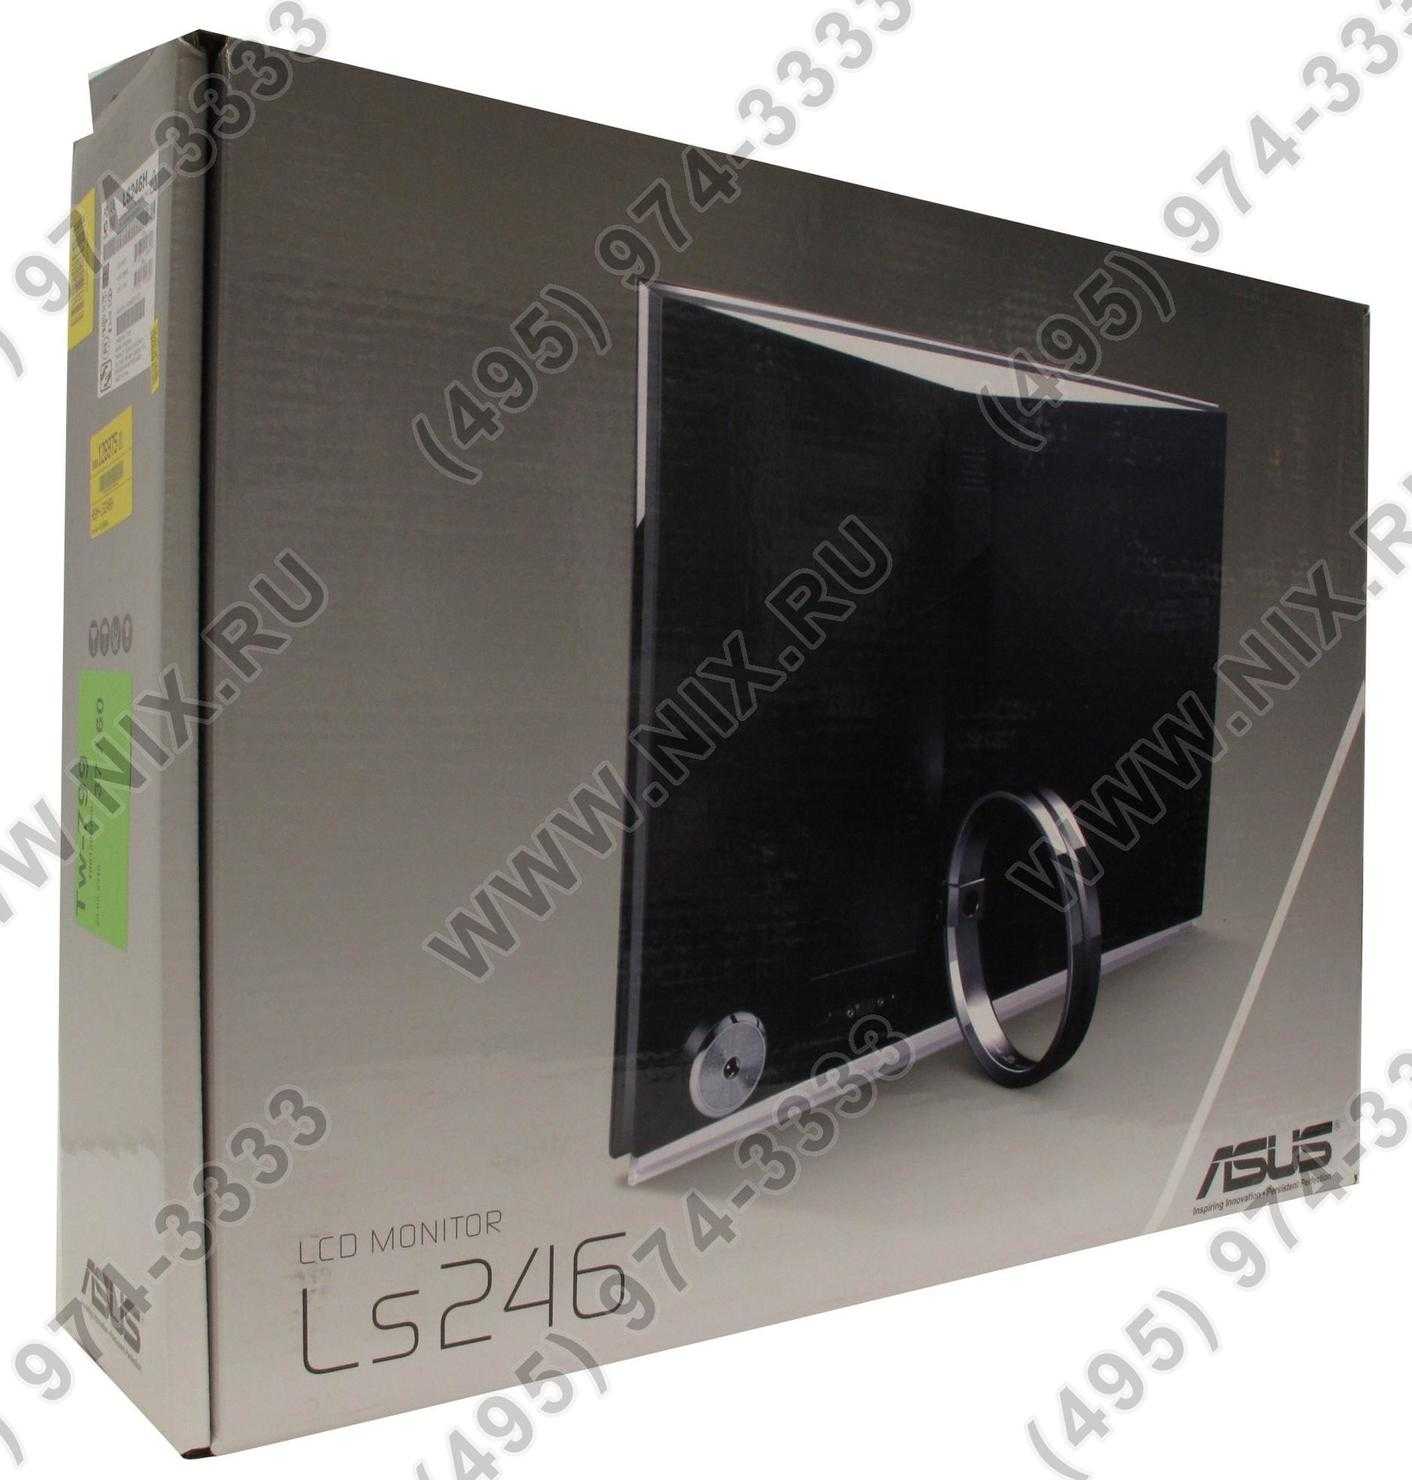 Asus ls248h - купить , скидки, цена, отзывы, обзор, характеристики - мониторы